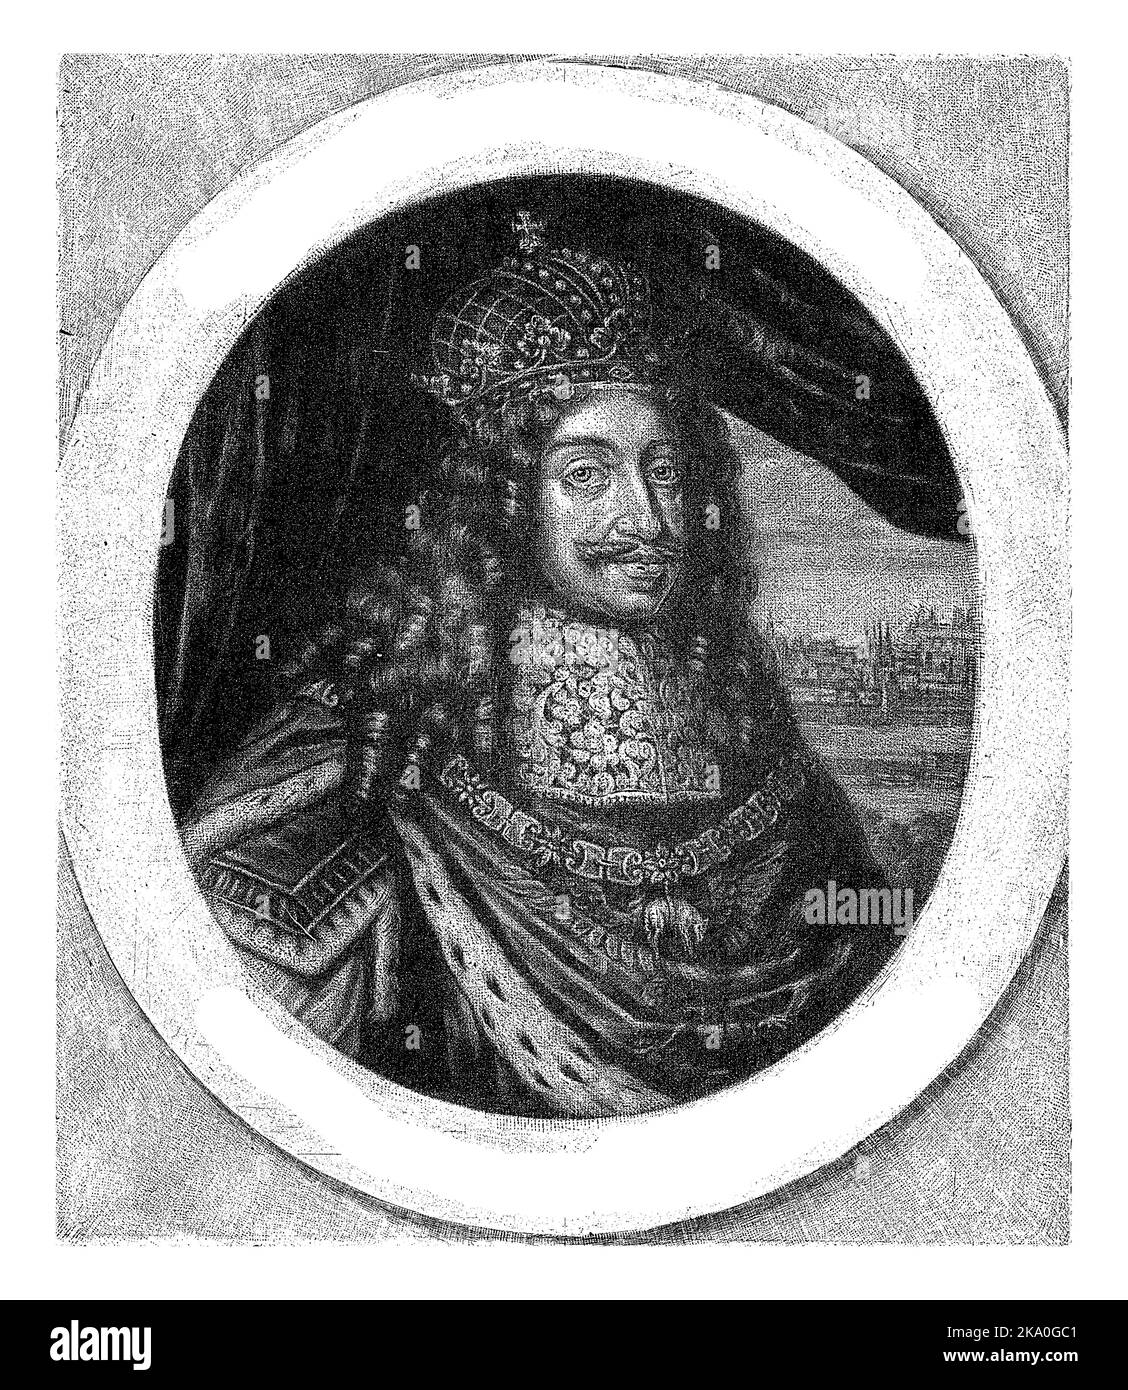 Léopold I, empereur du Saint Empire romain, archiduc d'Autriche et roi de Hongrie. Il porte une couronne et un manteau de couronnement. Banque D'Images